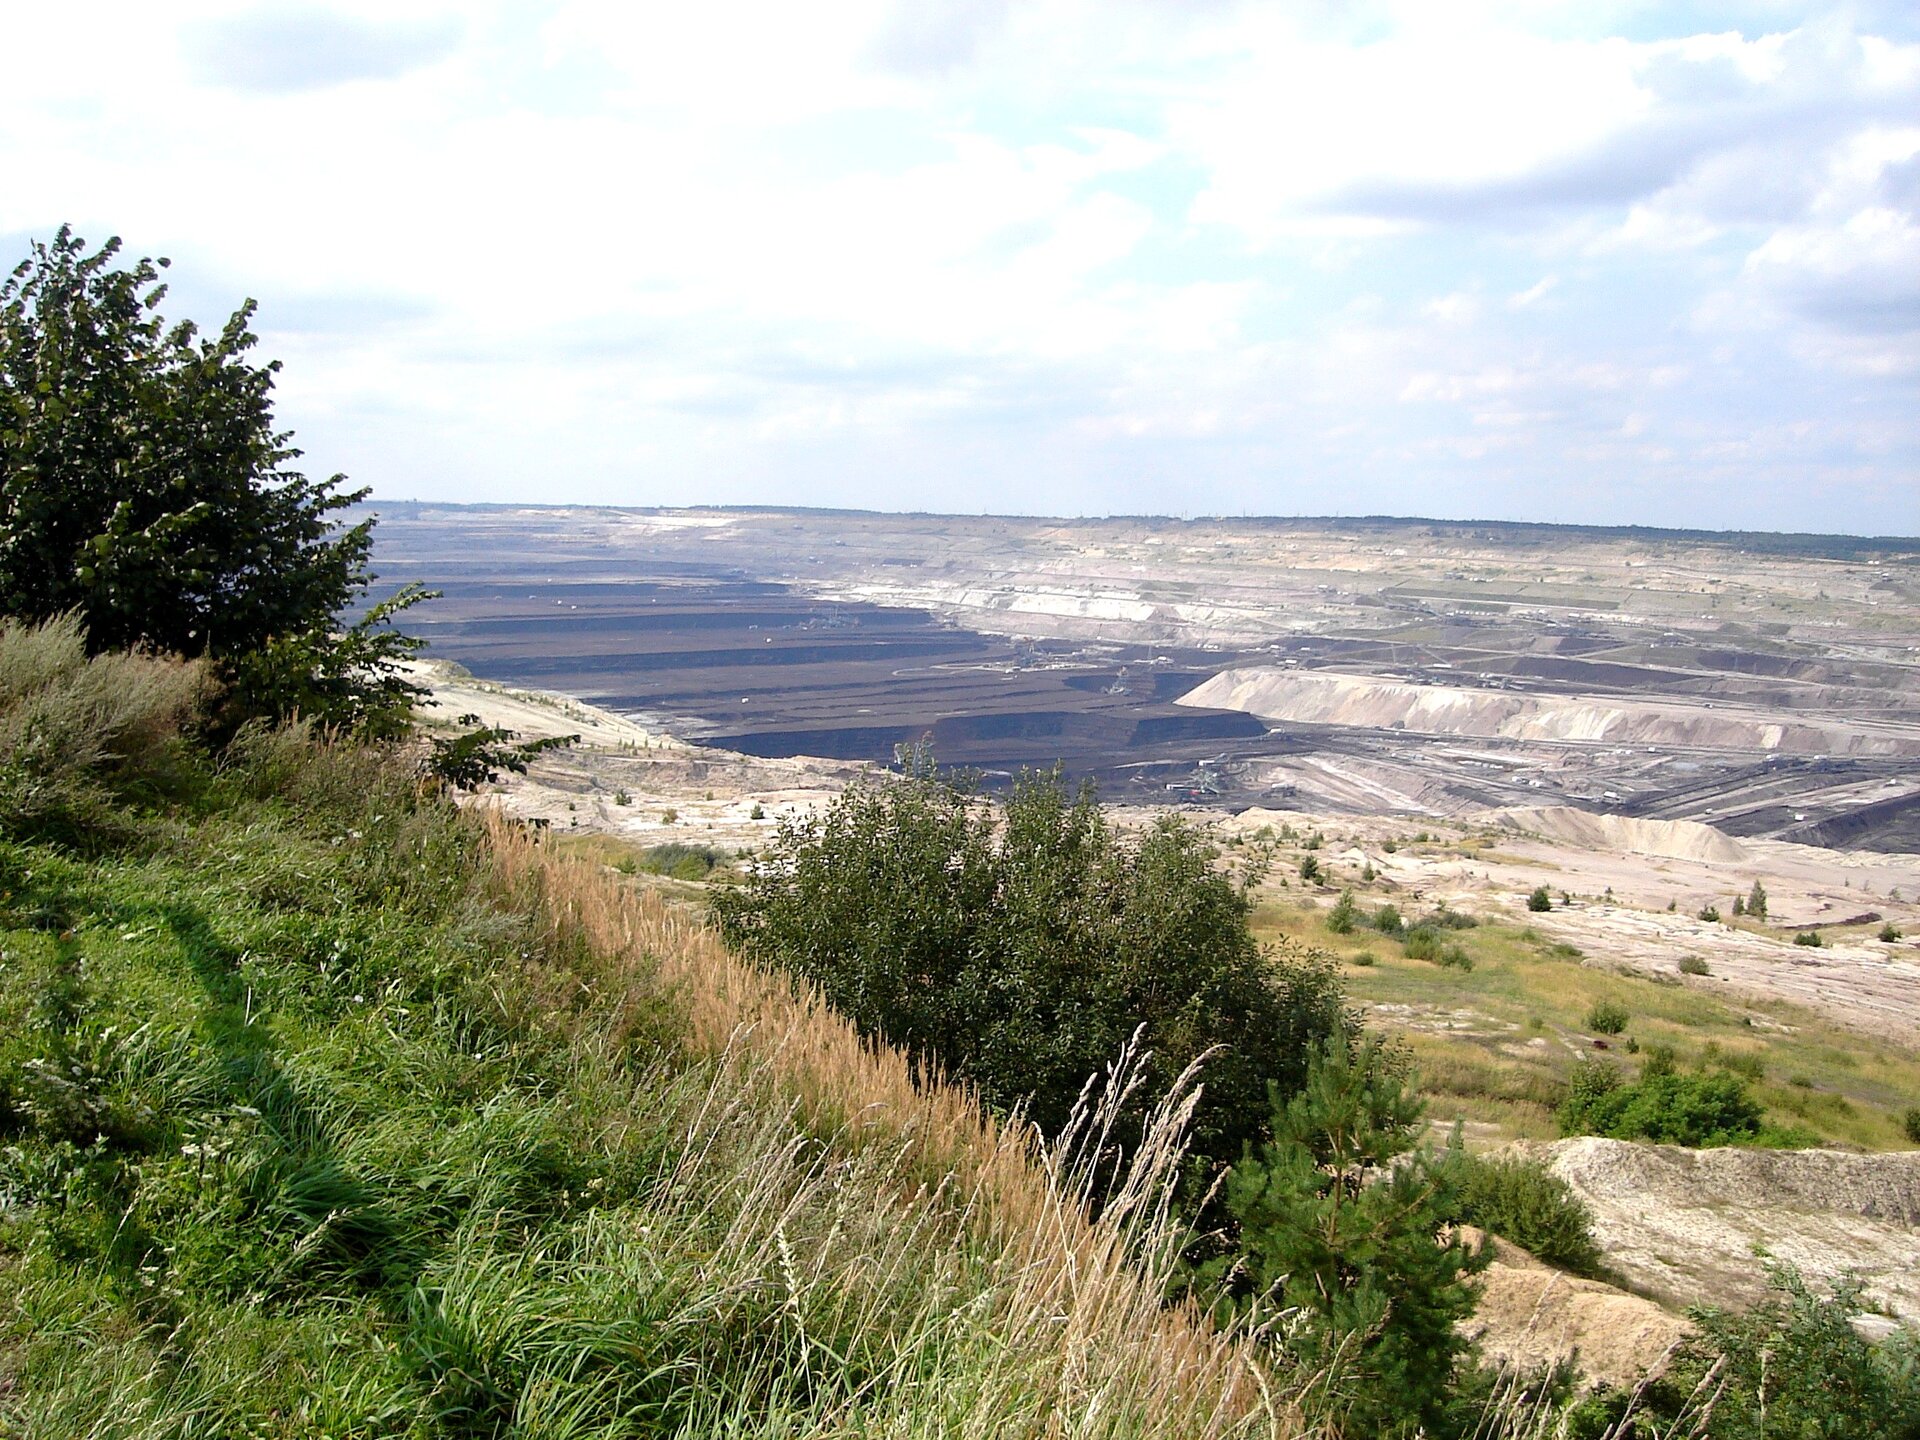 Zdjęcie przedstawia rozległą kopalnię odkrywkową. Teren kopalni jest położony w obniżeniu terenu. Ma liczne tarasy ciemnego koloru.  